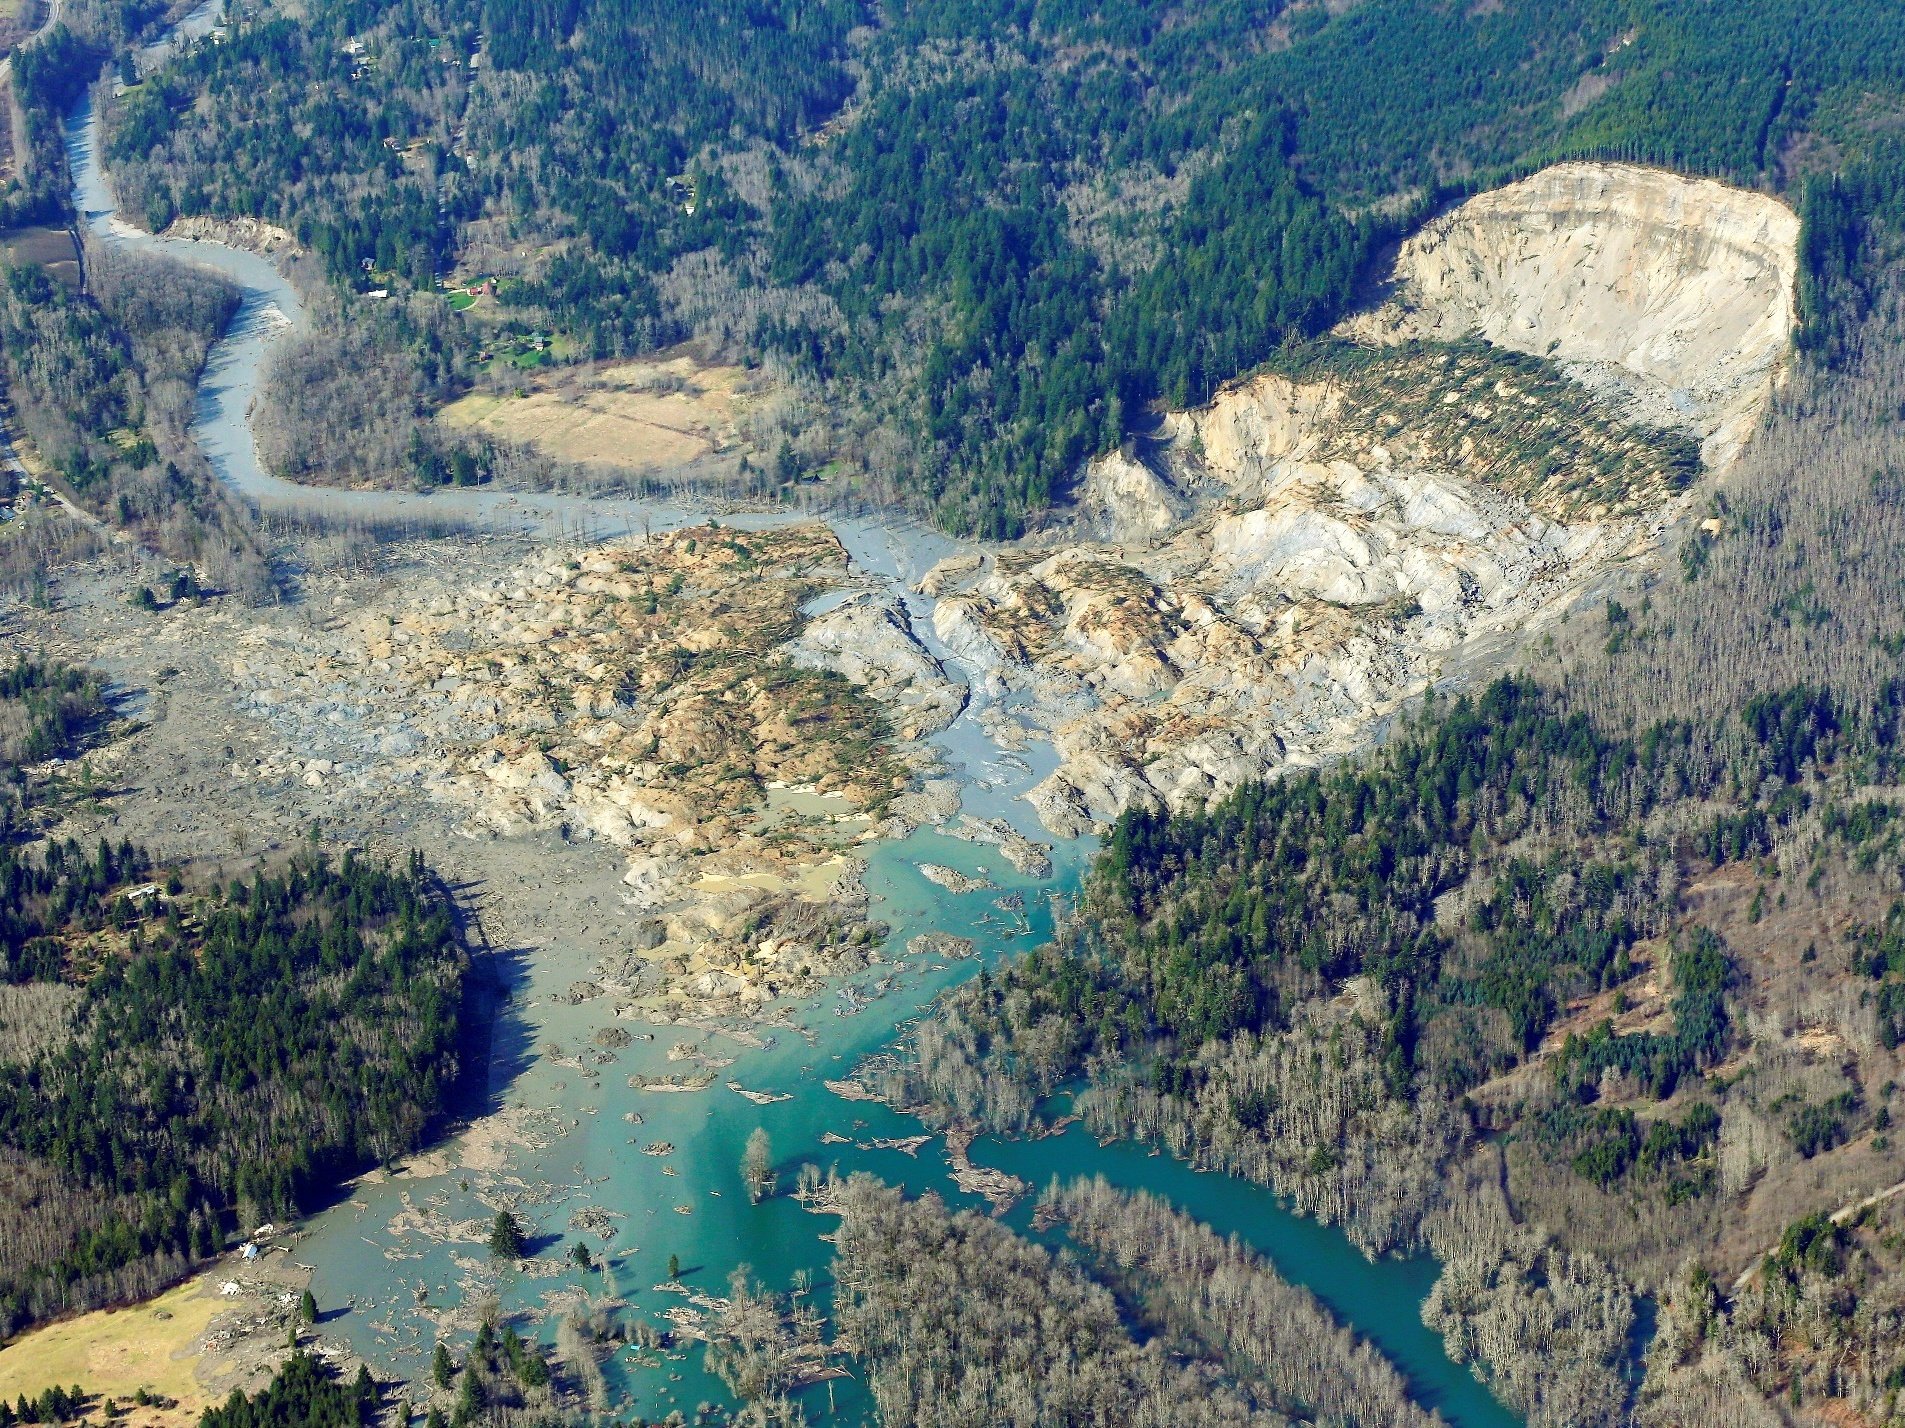 snohomish, Mudslide, Landslide, Nature, Natural, Disaster, Landscape, Forest, Washington, River Wallpaper